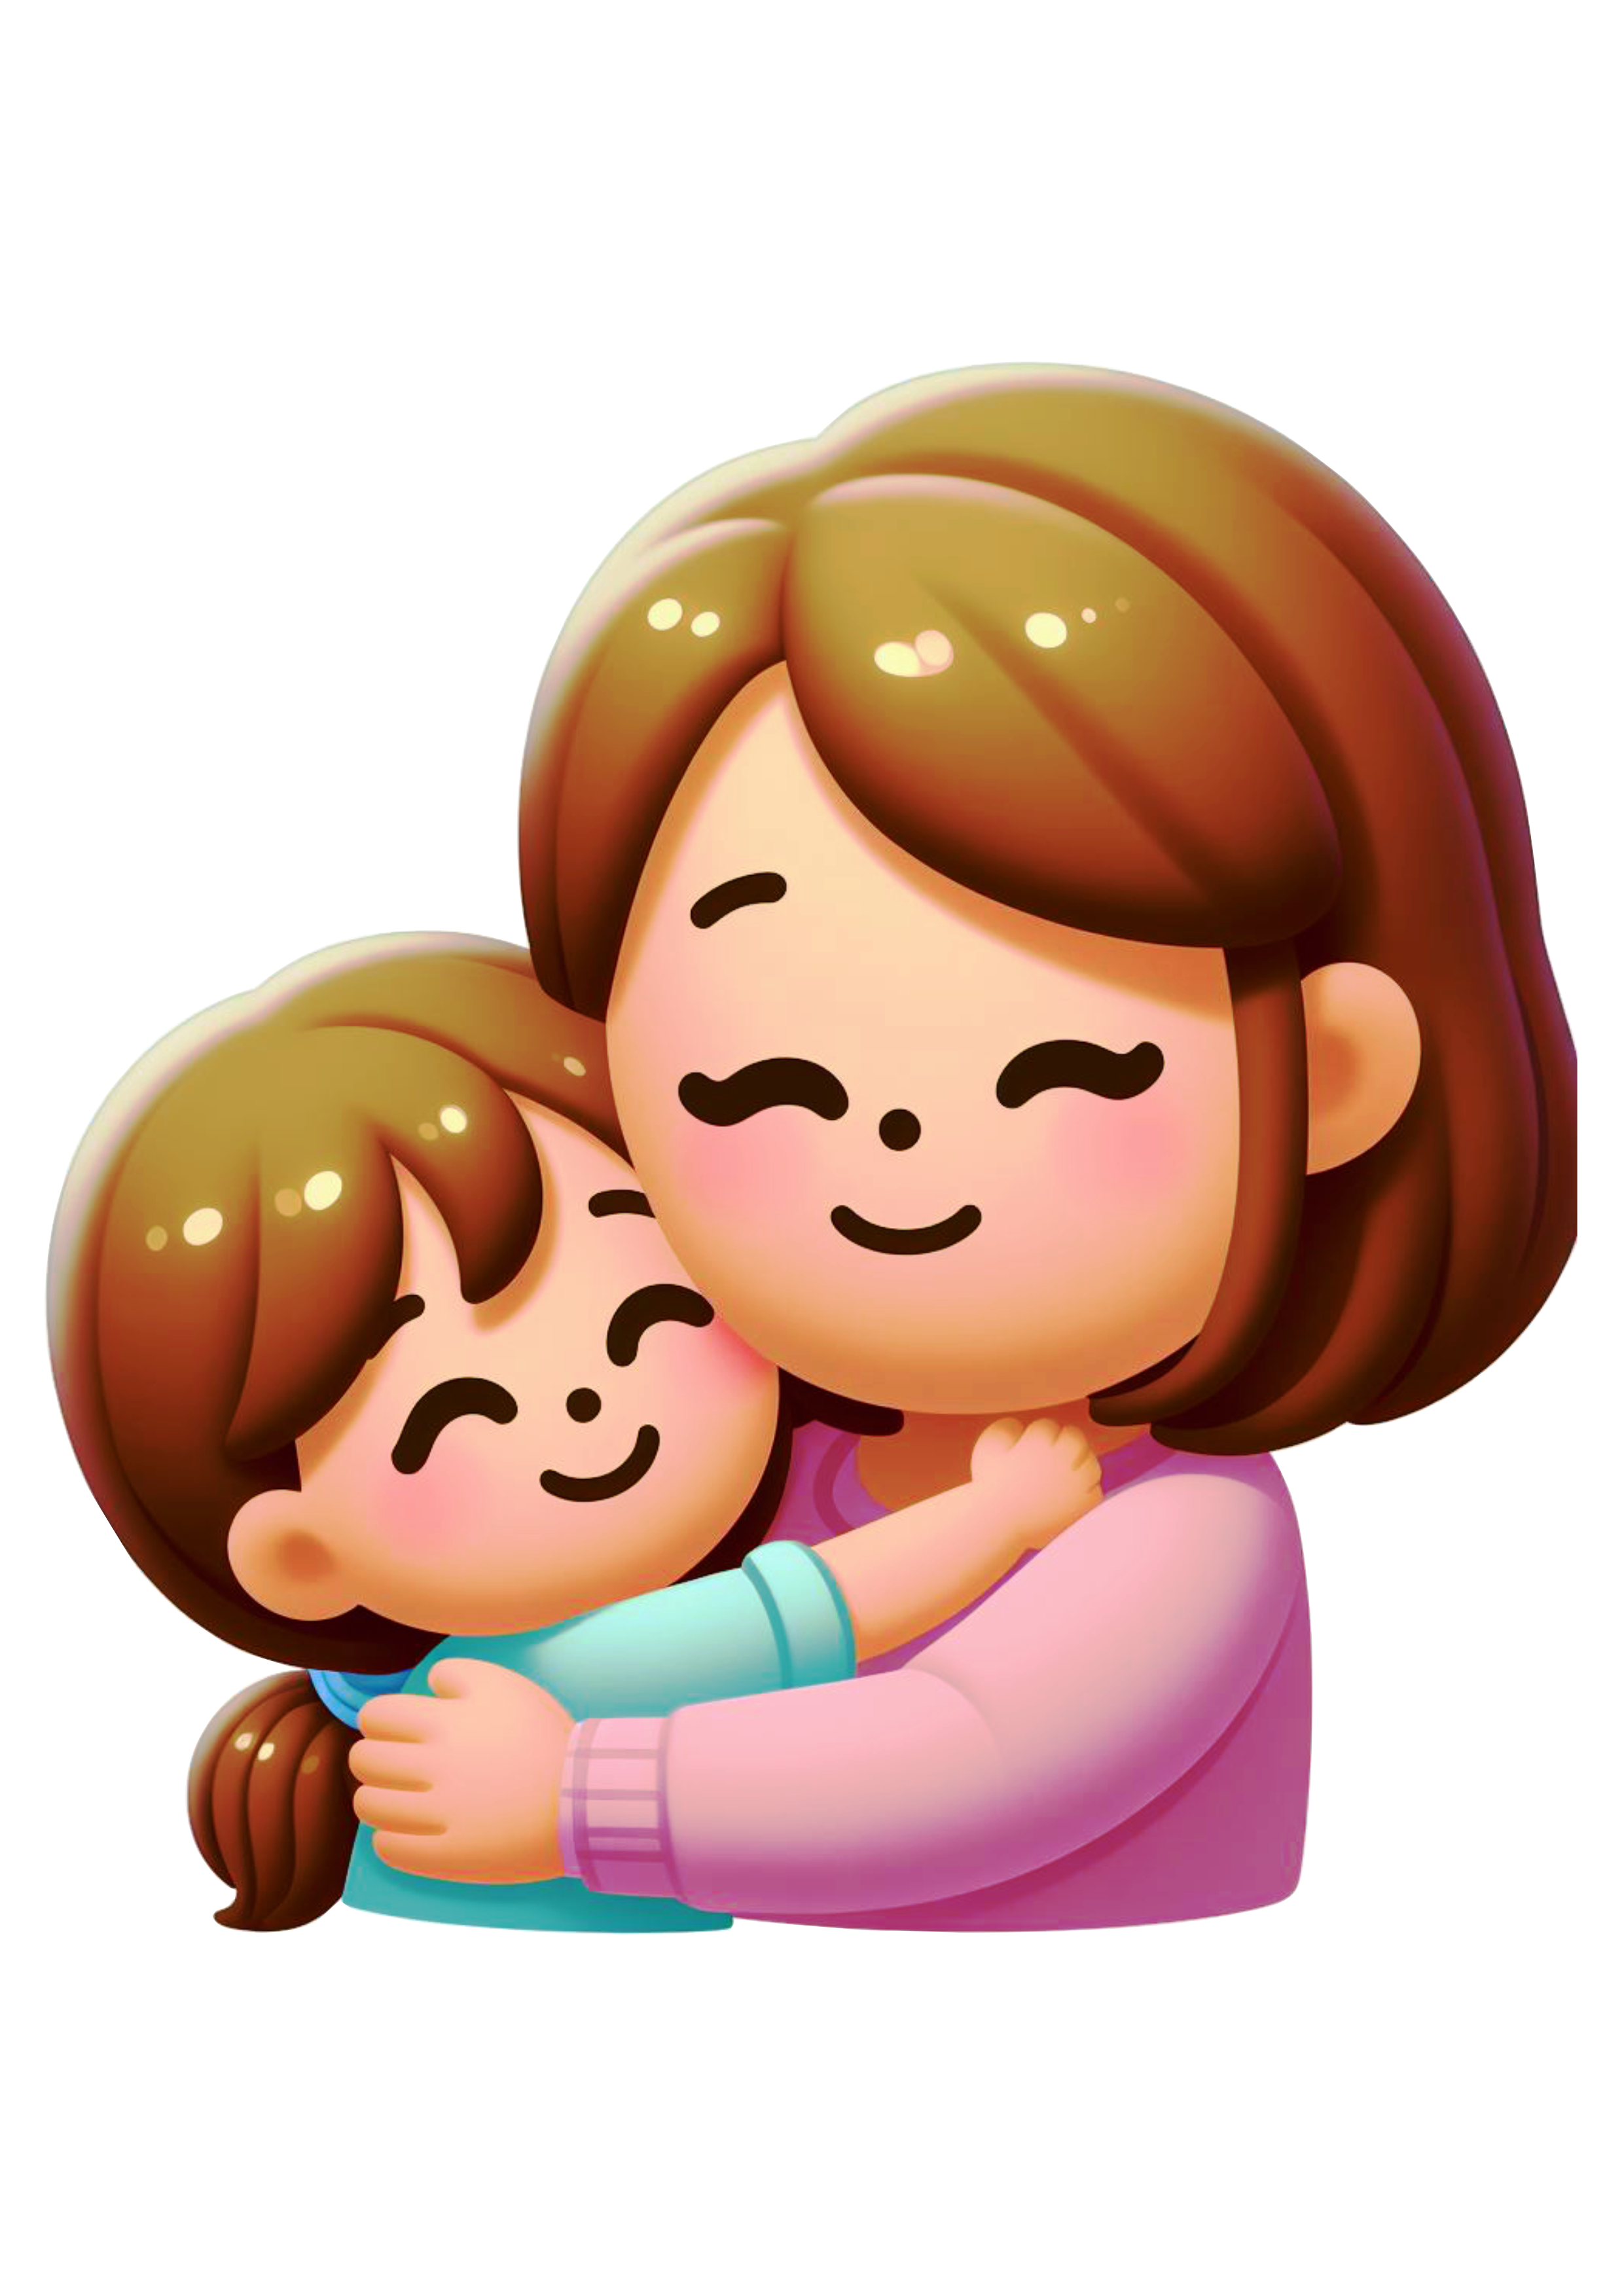 Dia das mães emojis figurinha para redes sociais whatsapp facebook png